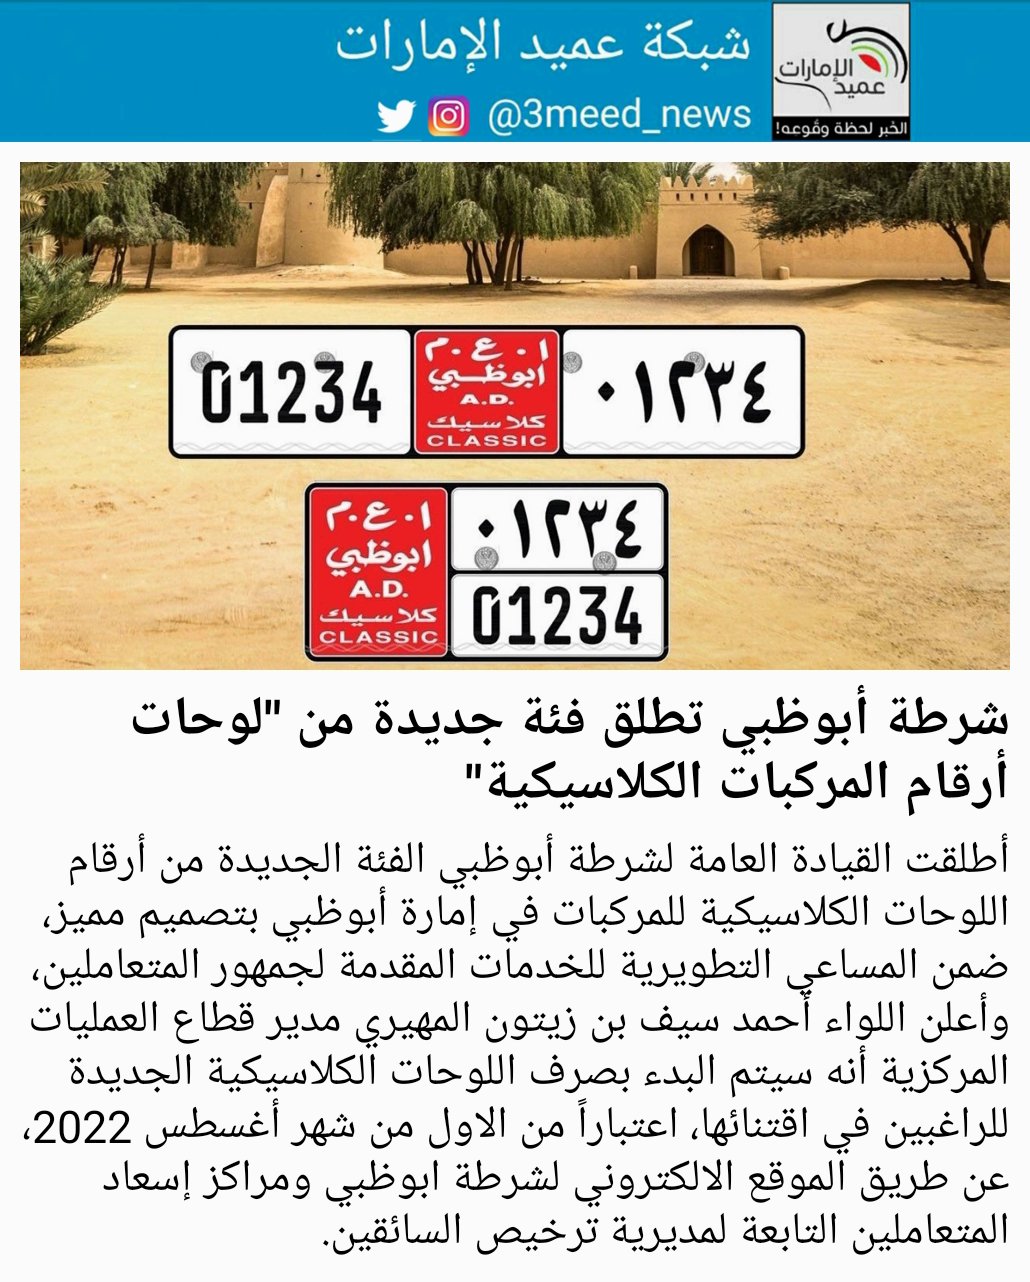 شبكة عميد الإمارات on X: "شرطة أبوظبي تطلق فئة جديدة من "لوحات أرقام  المركبات الكلاسيكية" #عميد_الإمارات https://t.co/4iVWSBB7u9" / X